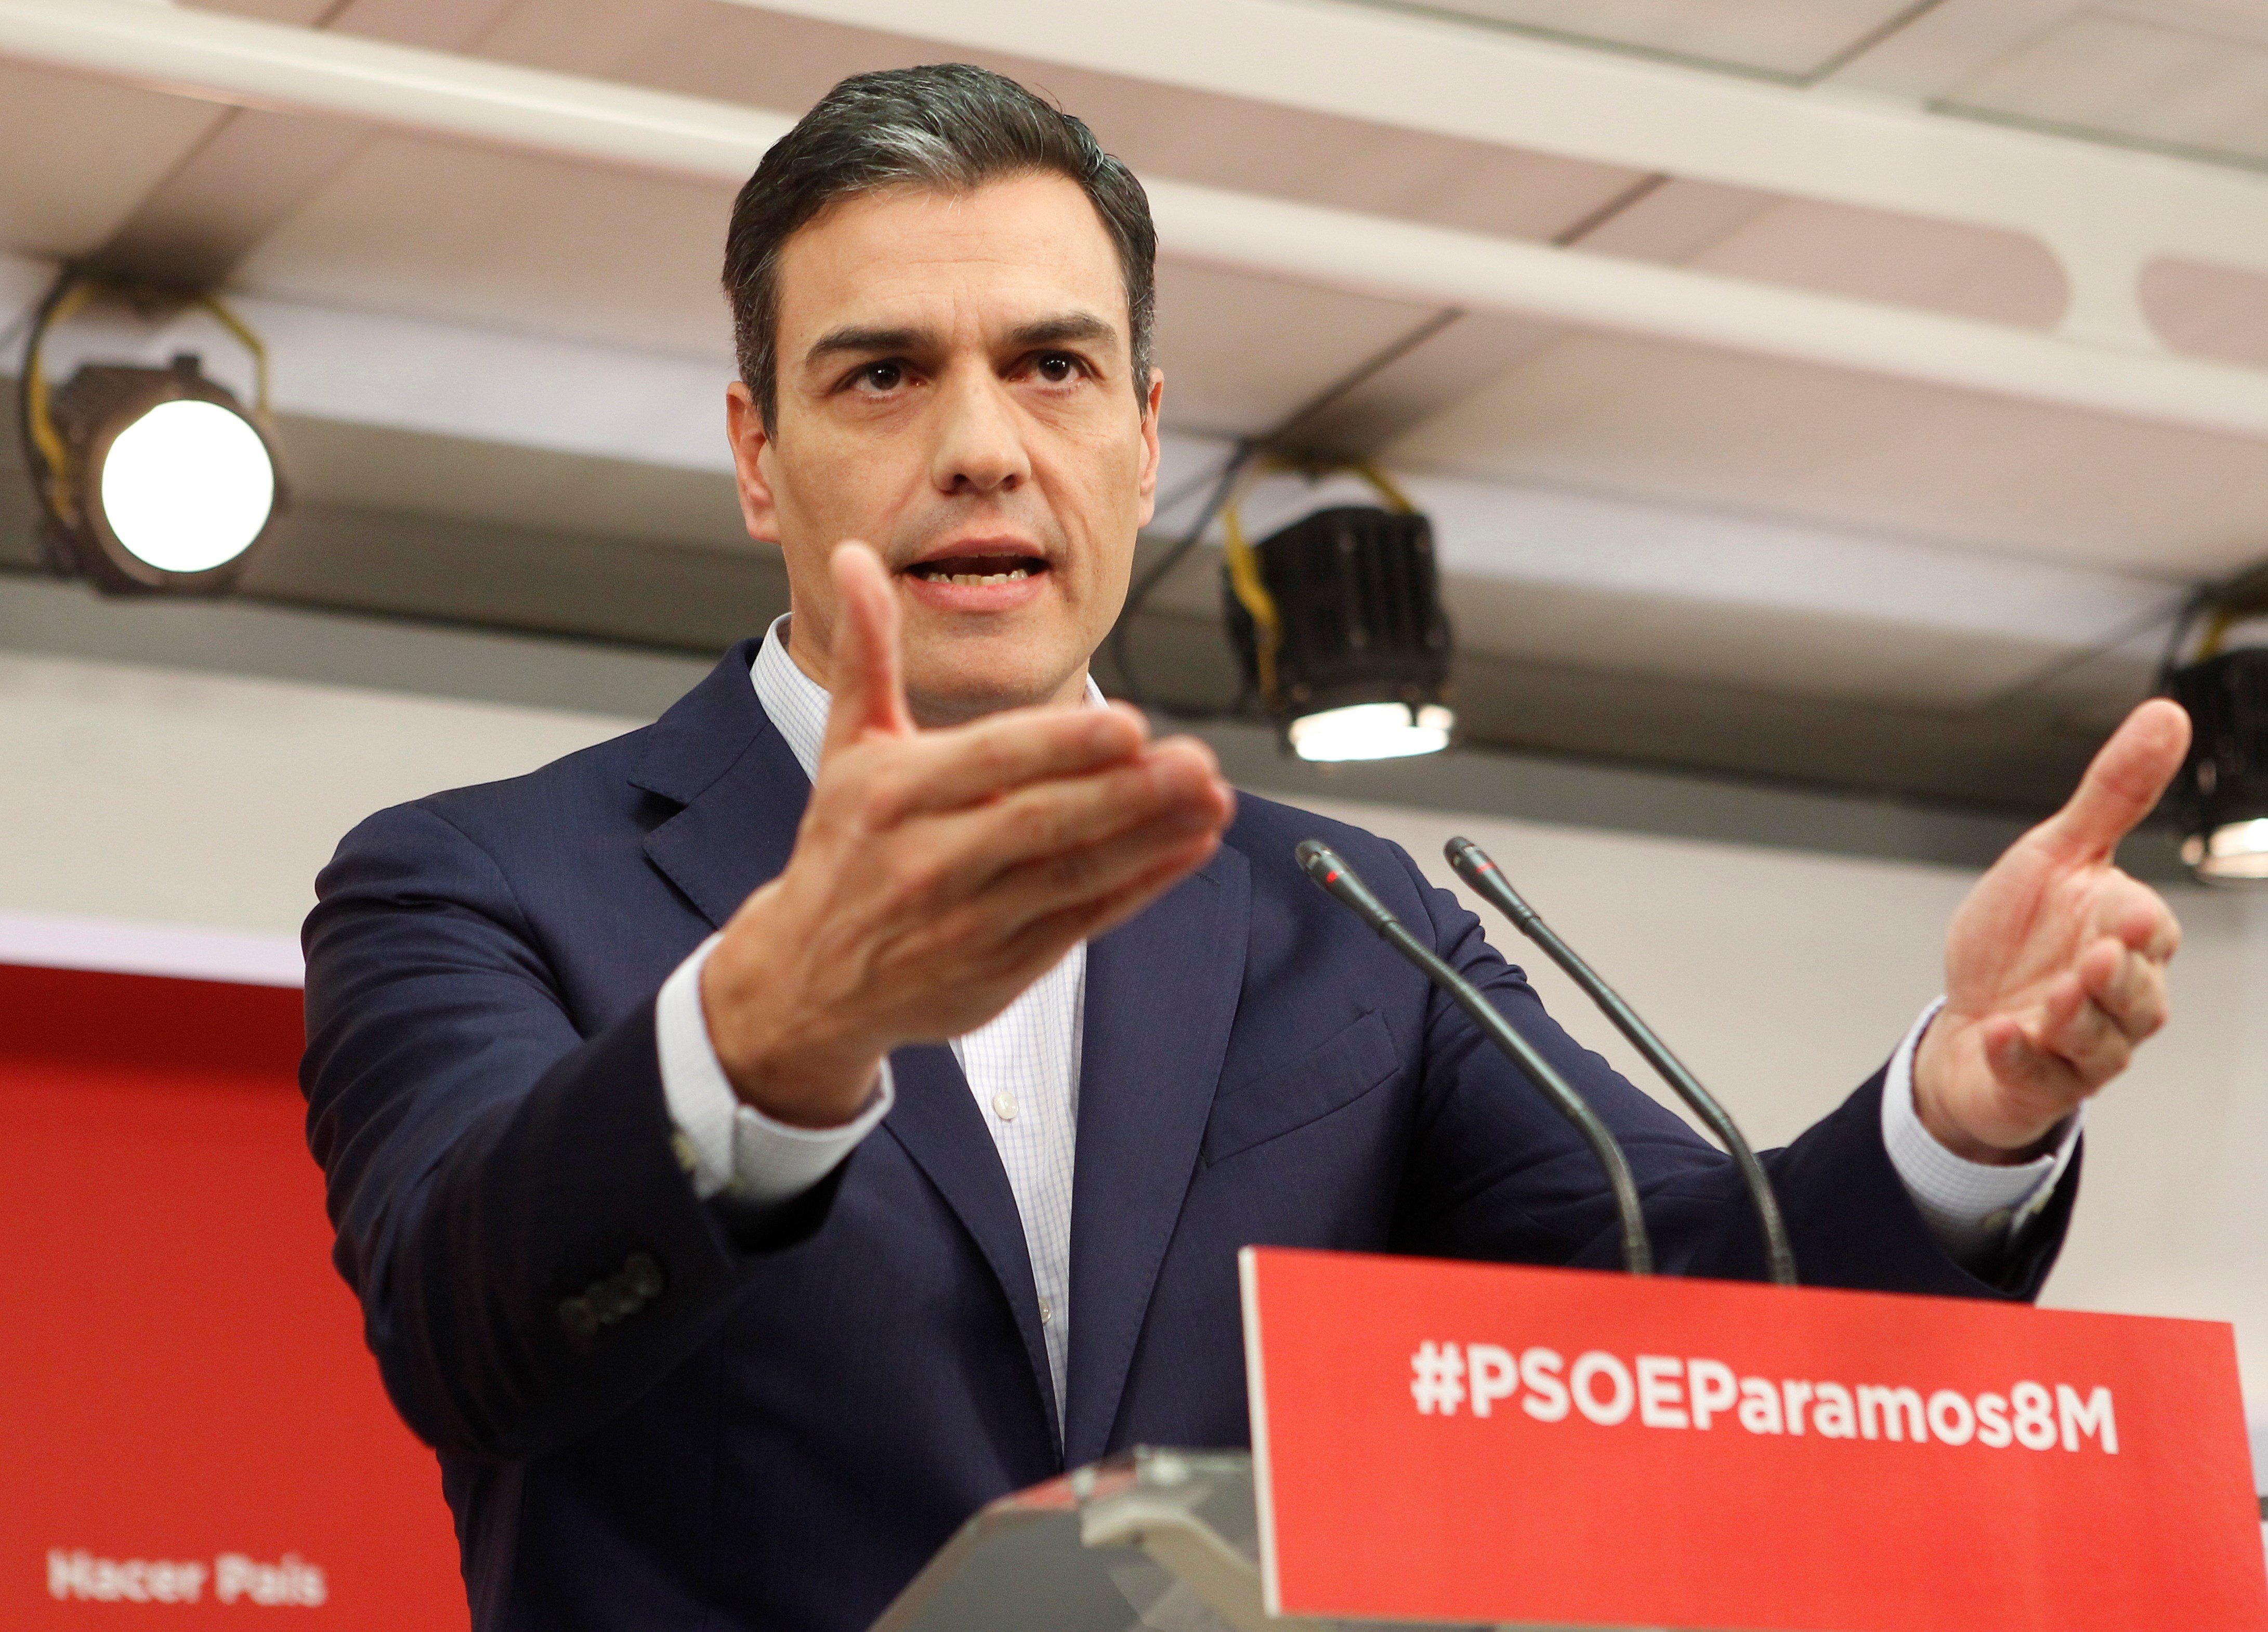 Pedro Sánchez justifica l'arrest de Puigdemont: "Ningú està per sobre la llei"